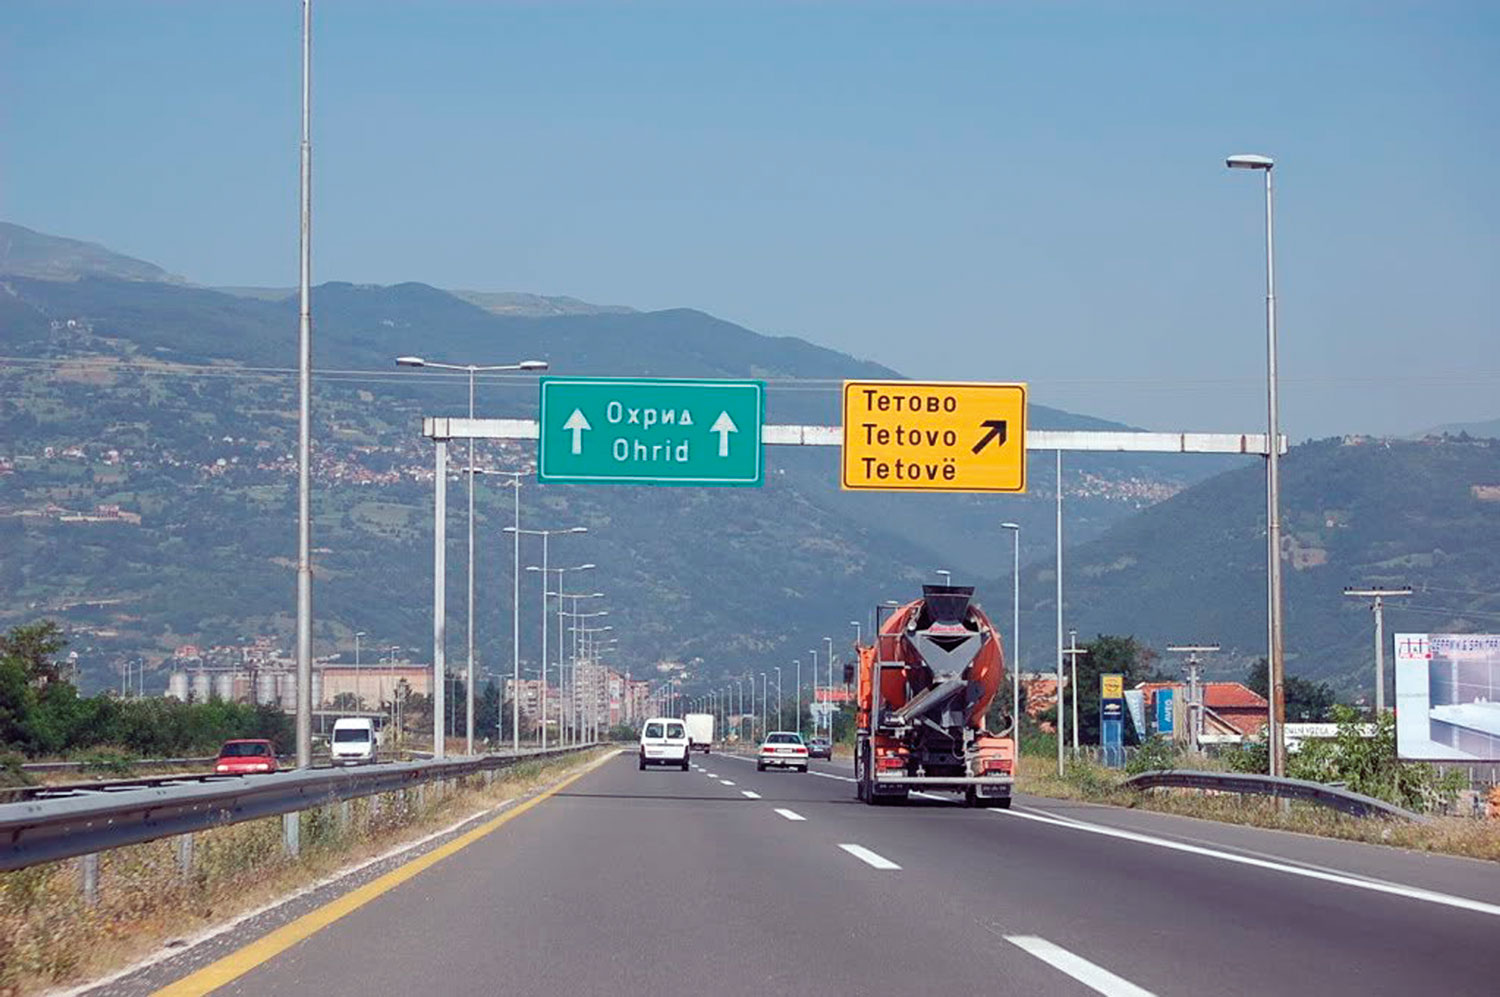 Završen autoput duž cijele Makedonije